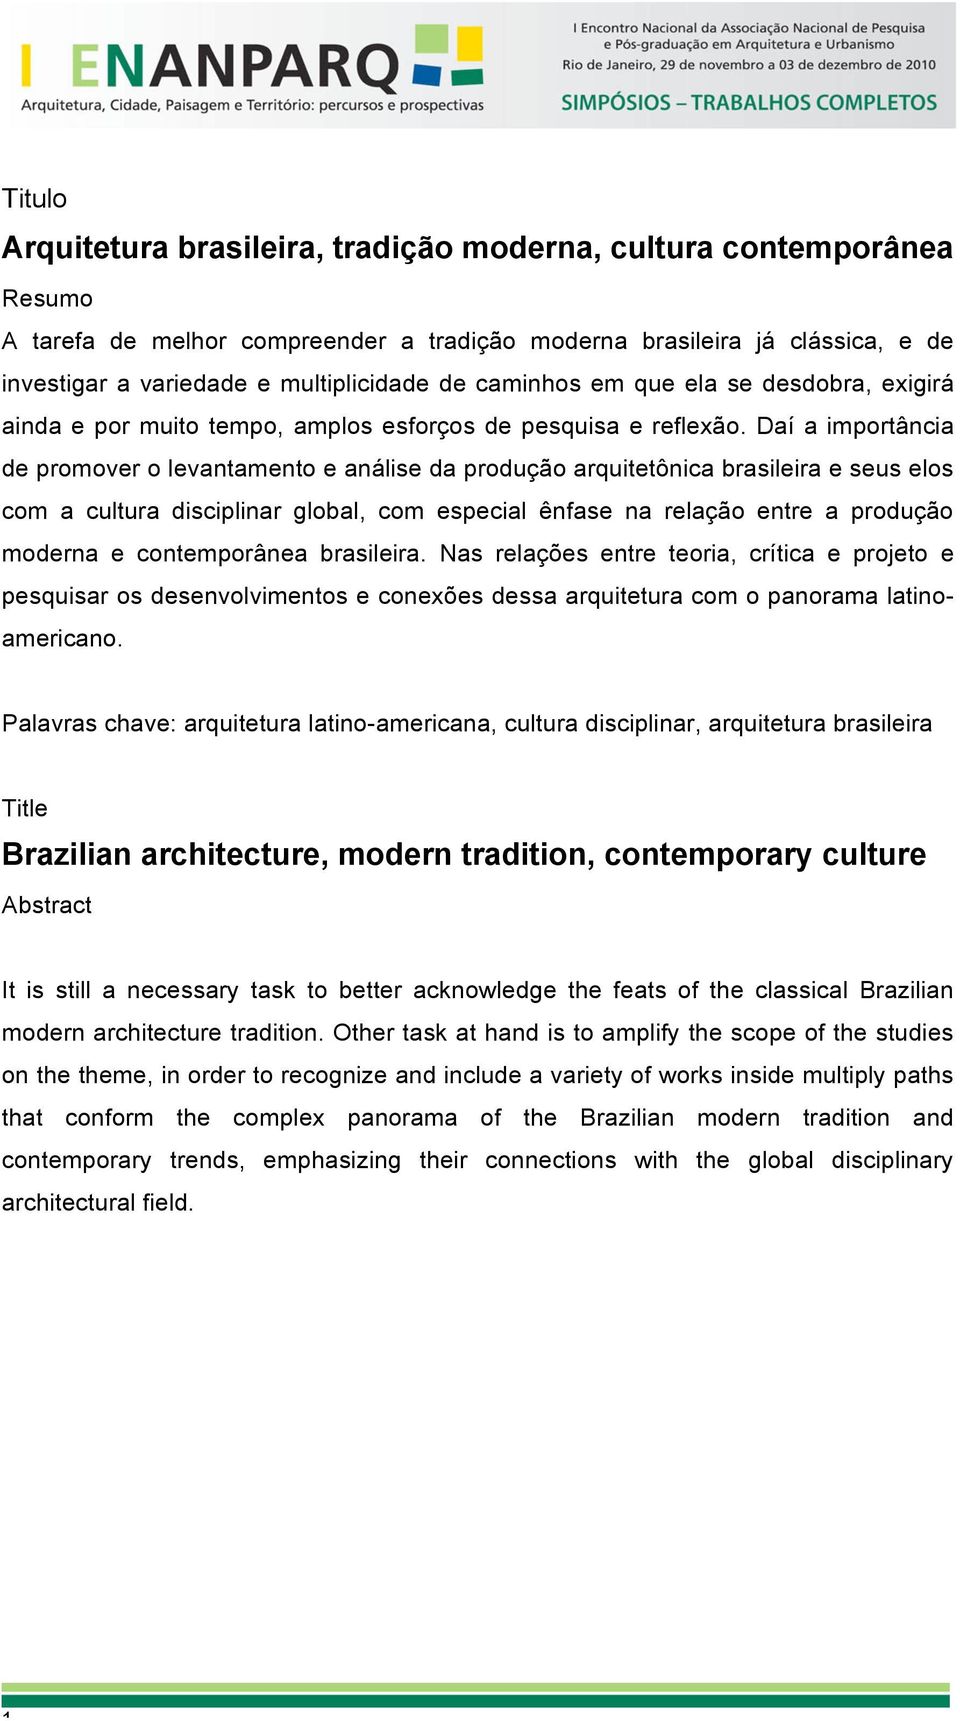 Daí a importância de promover o levantamento e análise da produção arquitetônica brasileira e seus elos com a cultura disciplinar global, com especial ênfase na relação entre a produção moderna e